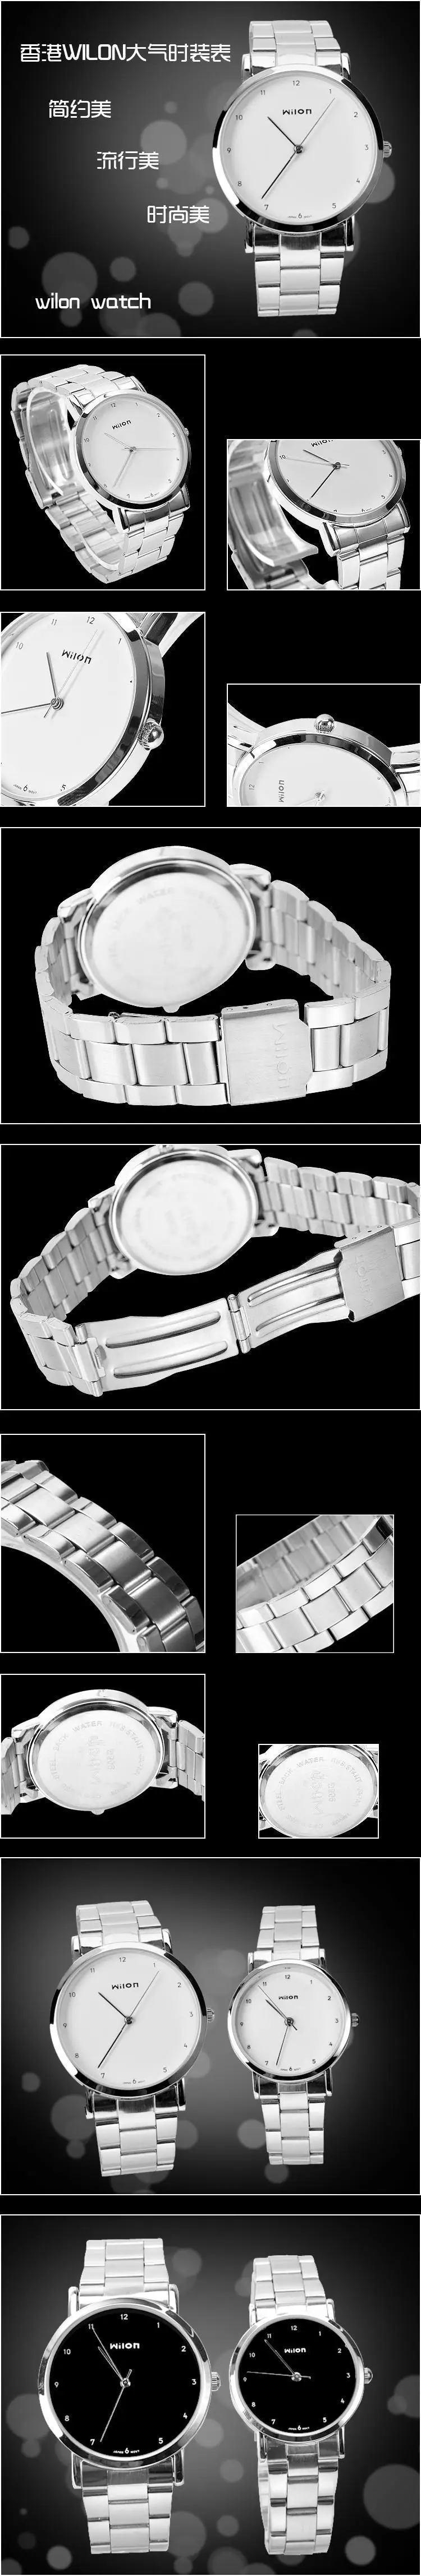 Новый оригинальный Veyron Wilon 906 наручные часы любителей моды часы в простом стиле стальной полосы кварцевые часы мужские и женские часы Relogio